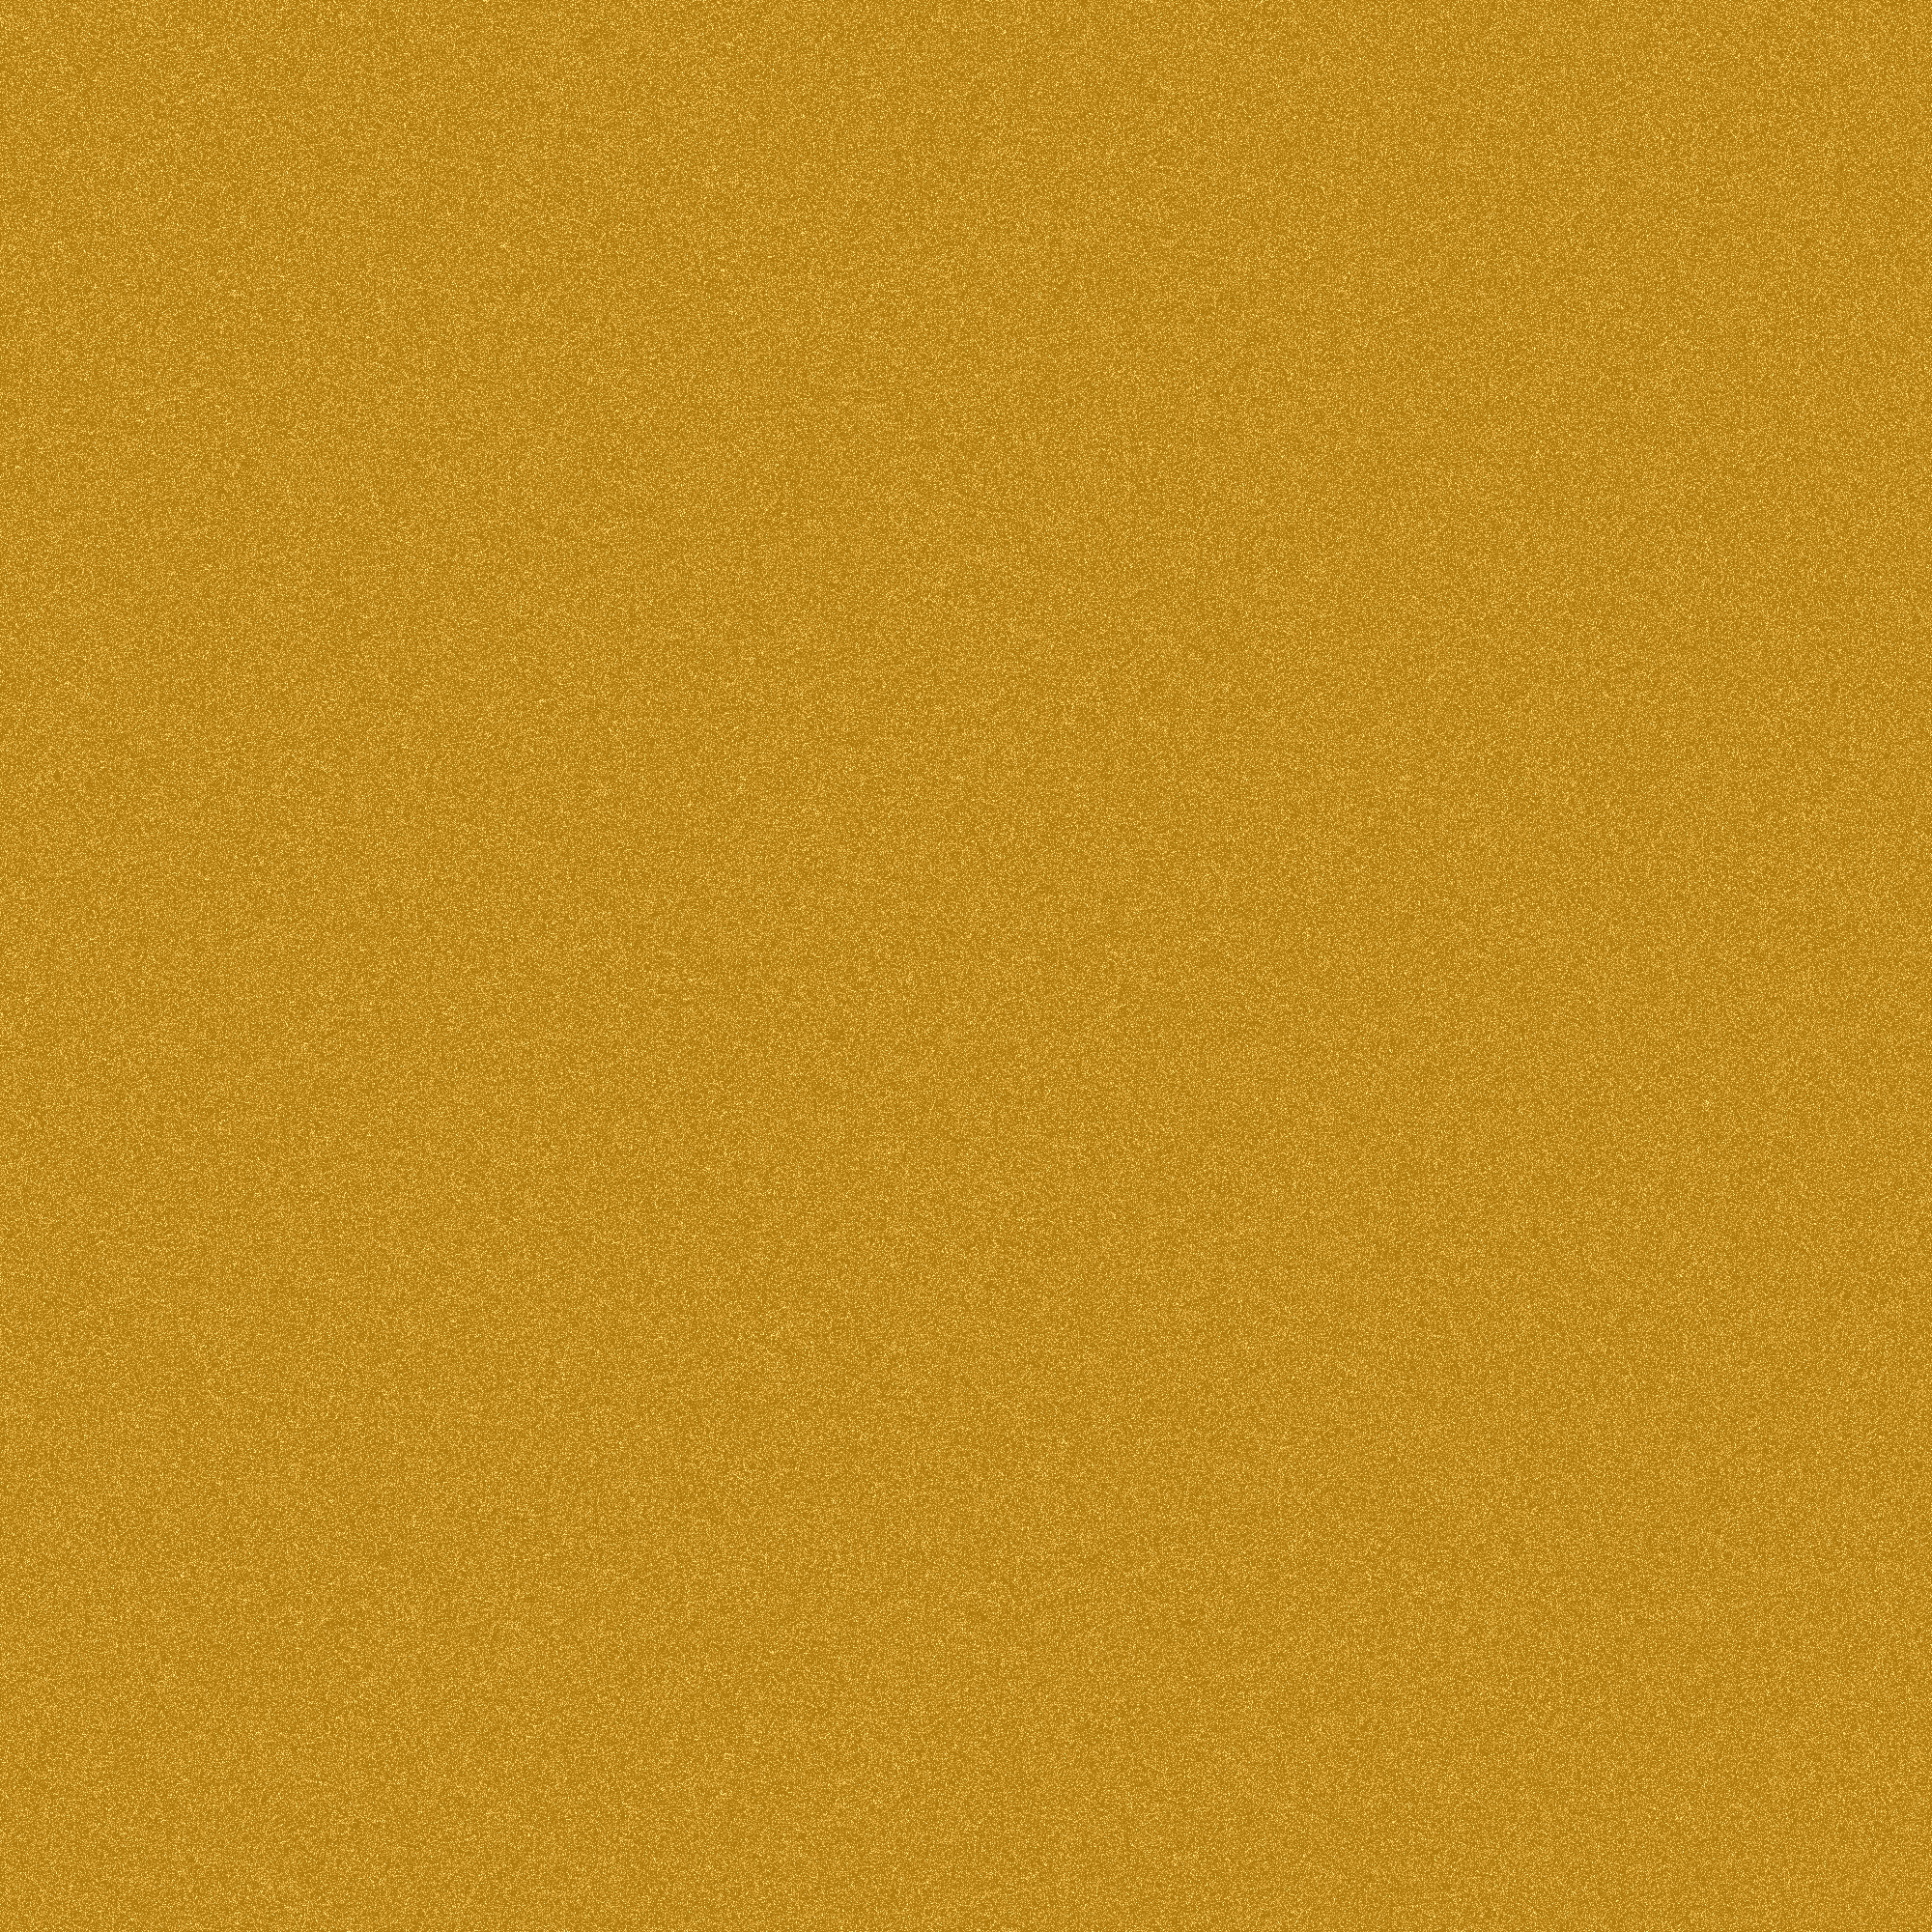 Gold Noise background texture. PNG:Public Domain. ICON PARK